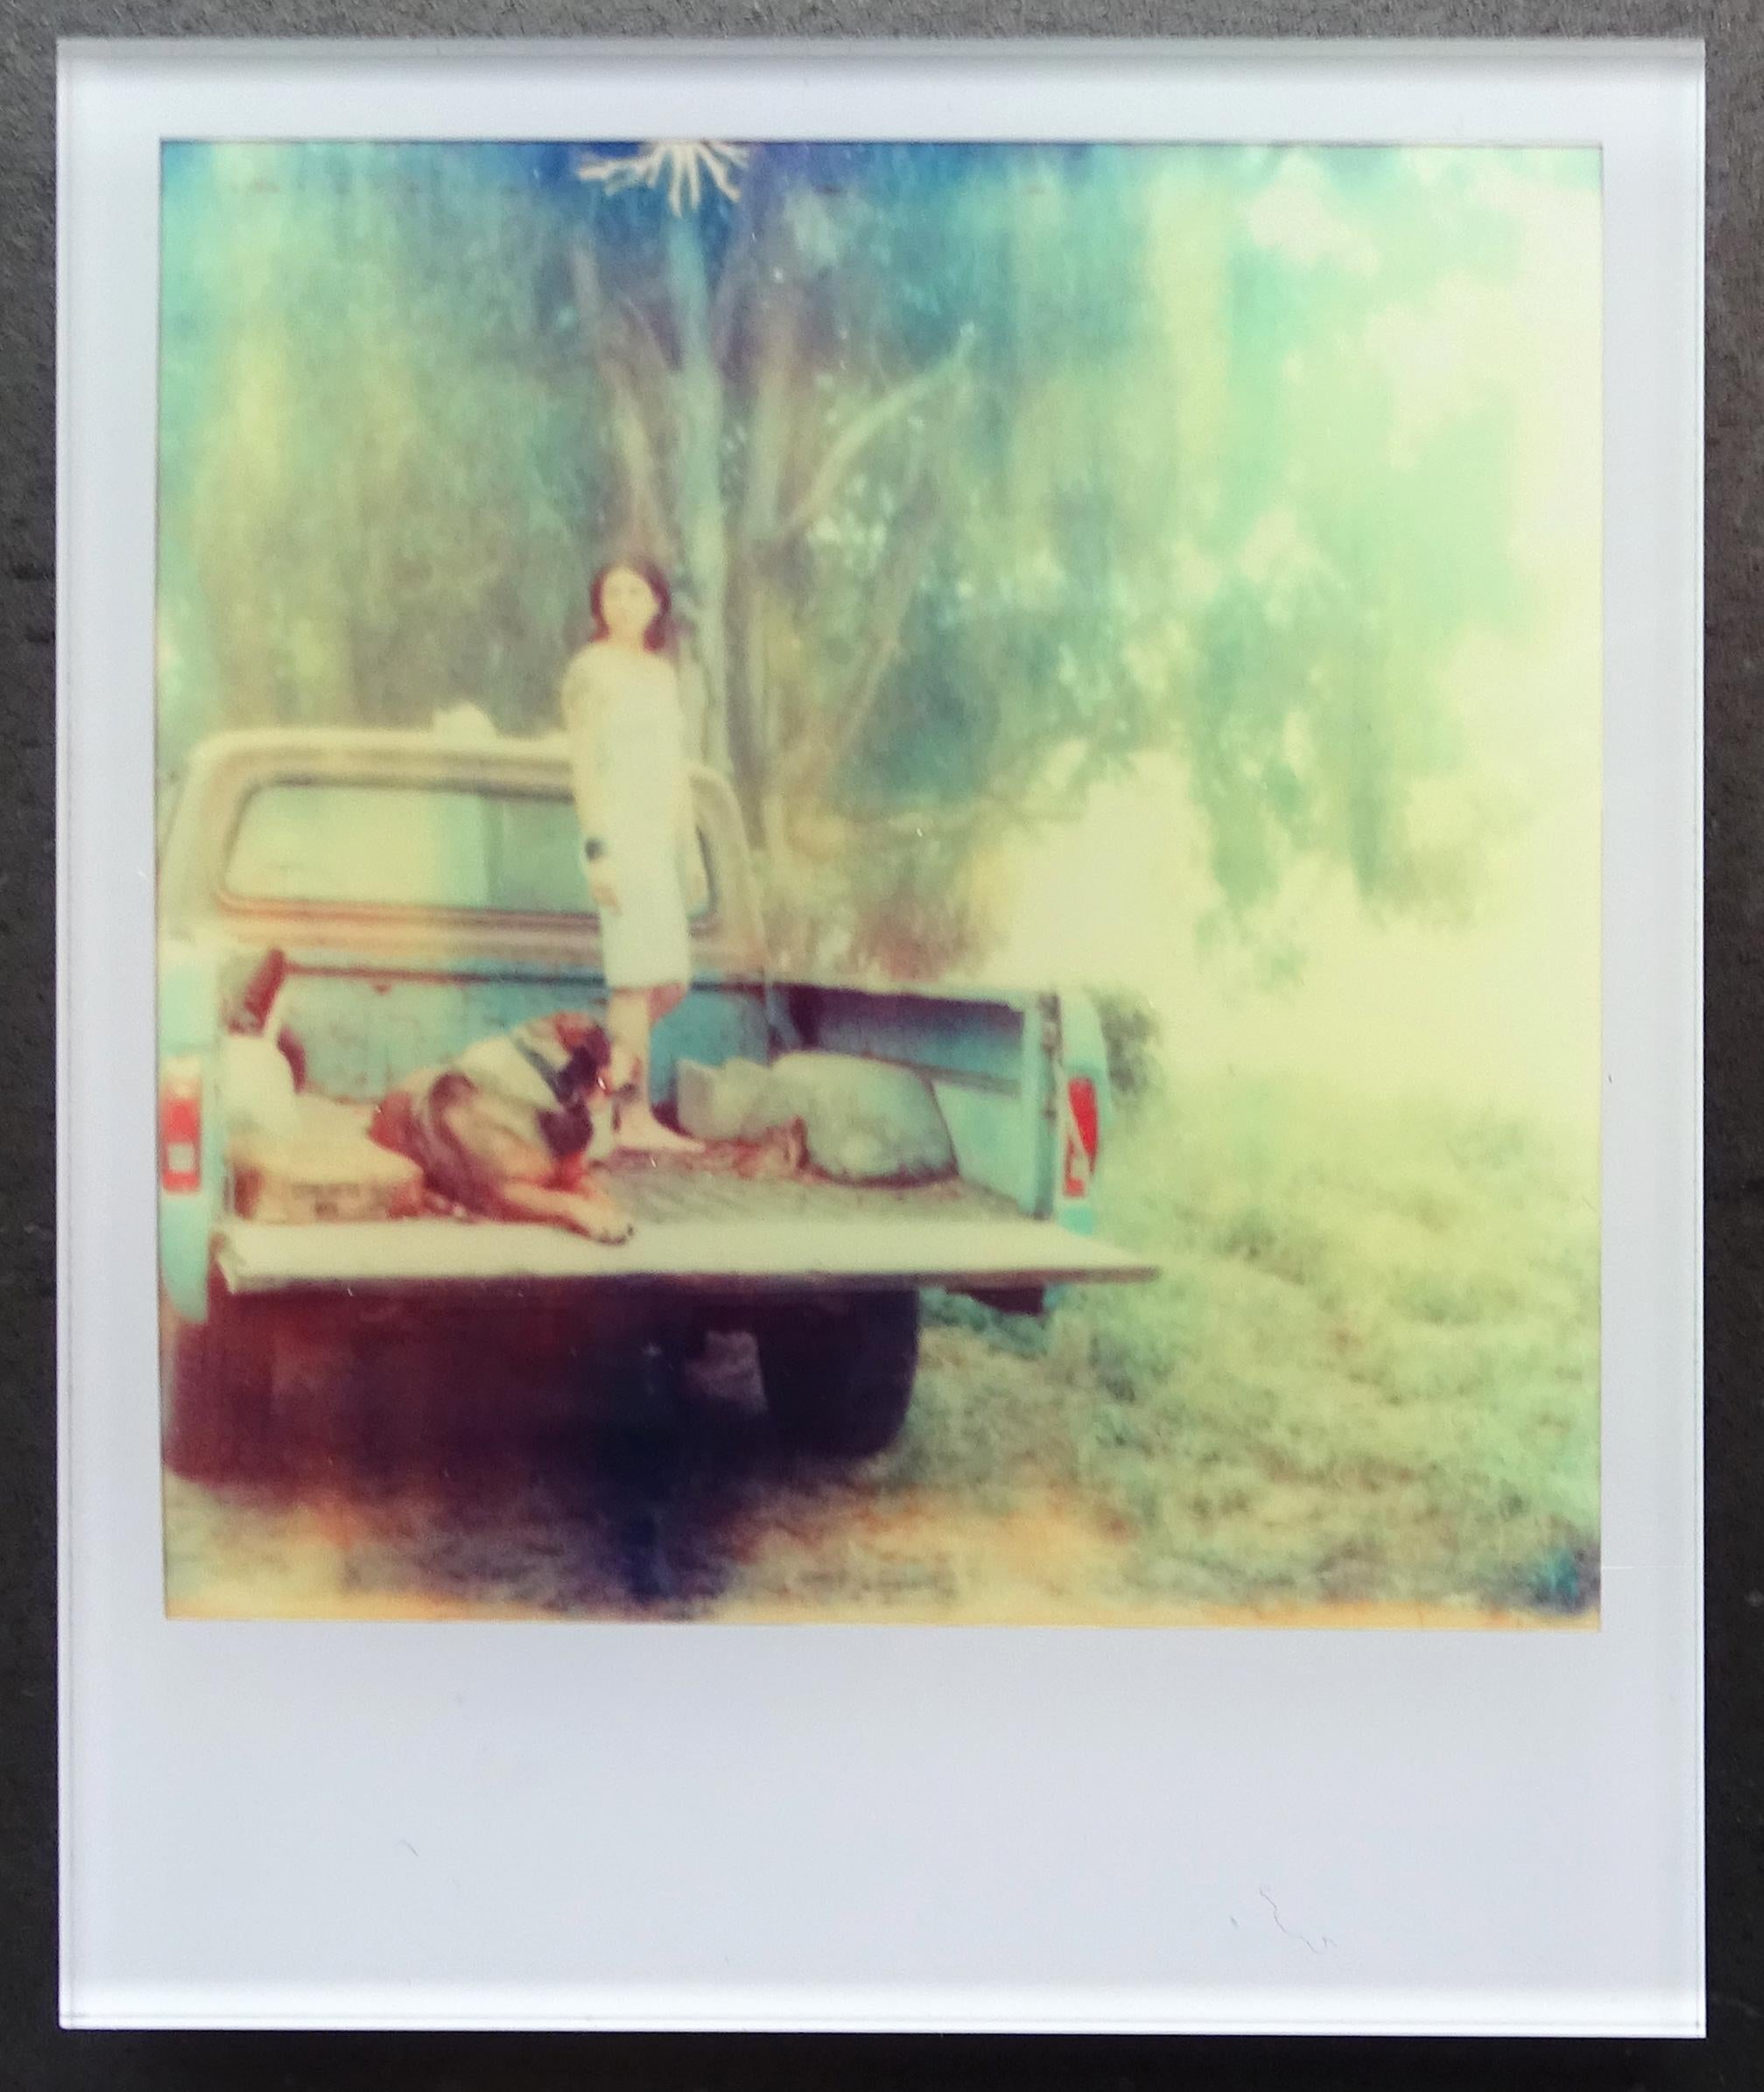 Stefanie Schneider Minis - Saigon (Stranger than Paradise) - based on a Polaroid